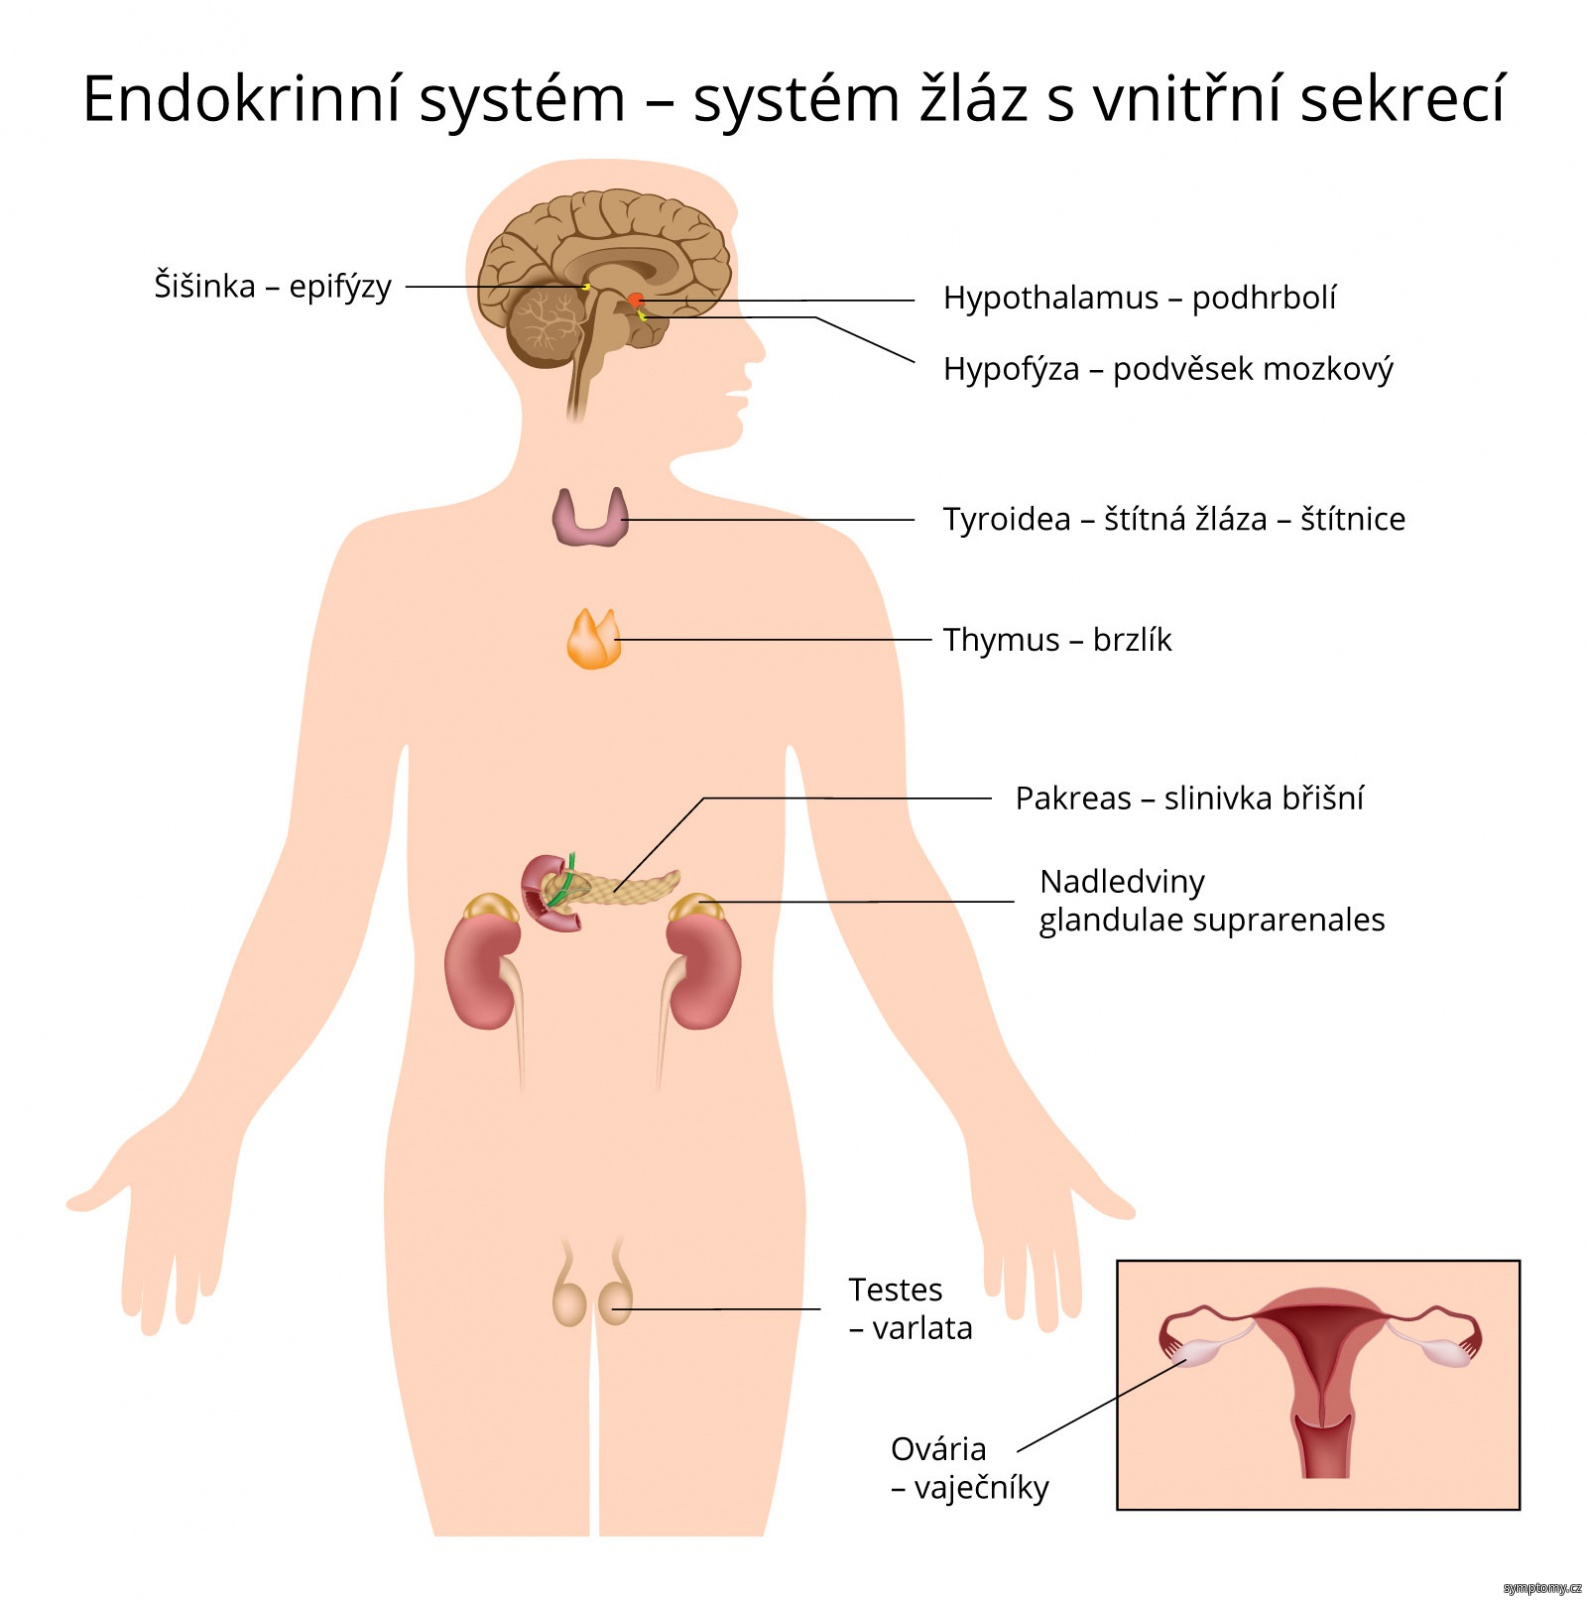 Endokrinní systém - systém žláz s vnitřní sekrecí